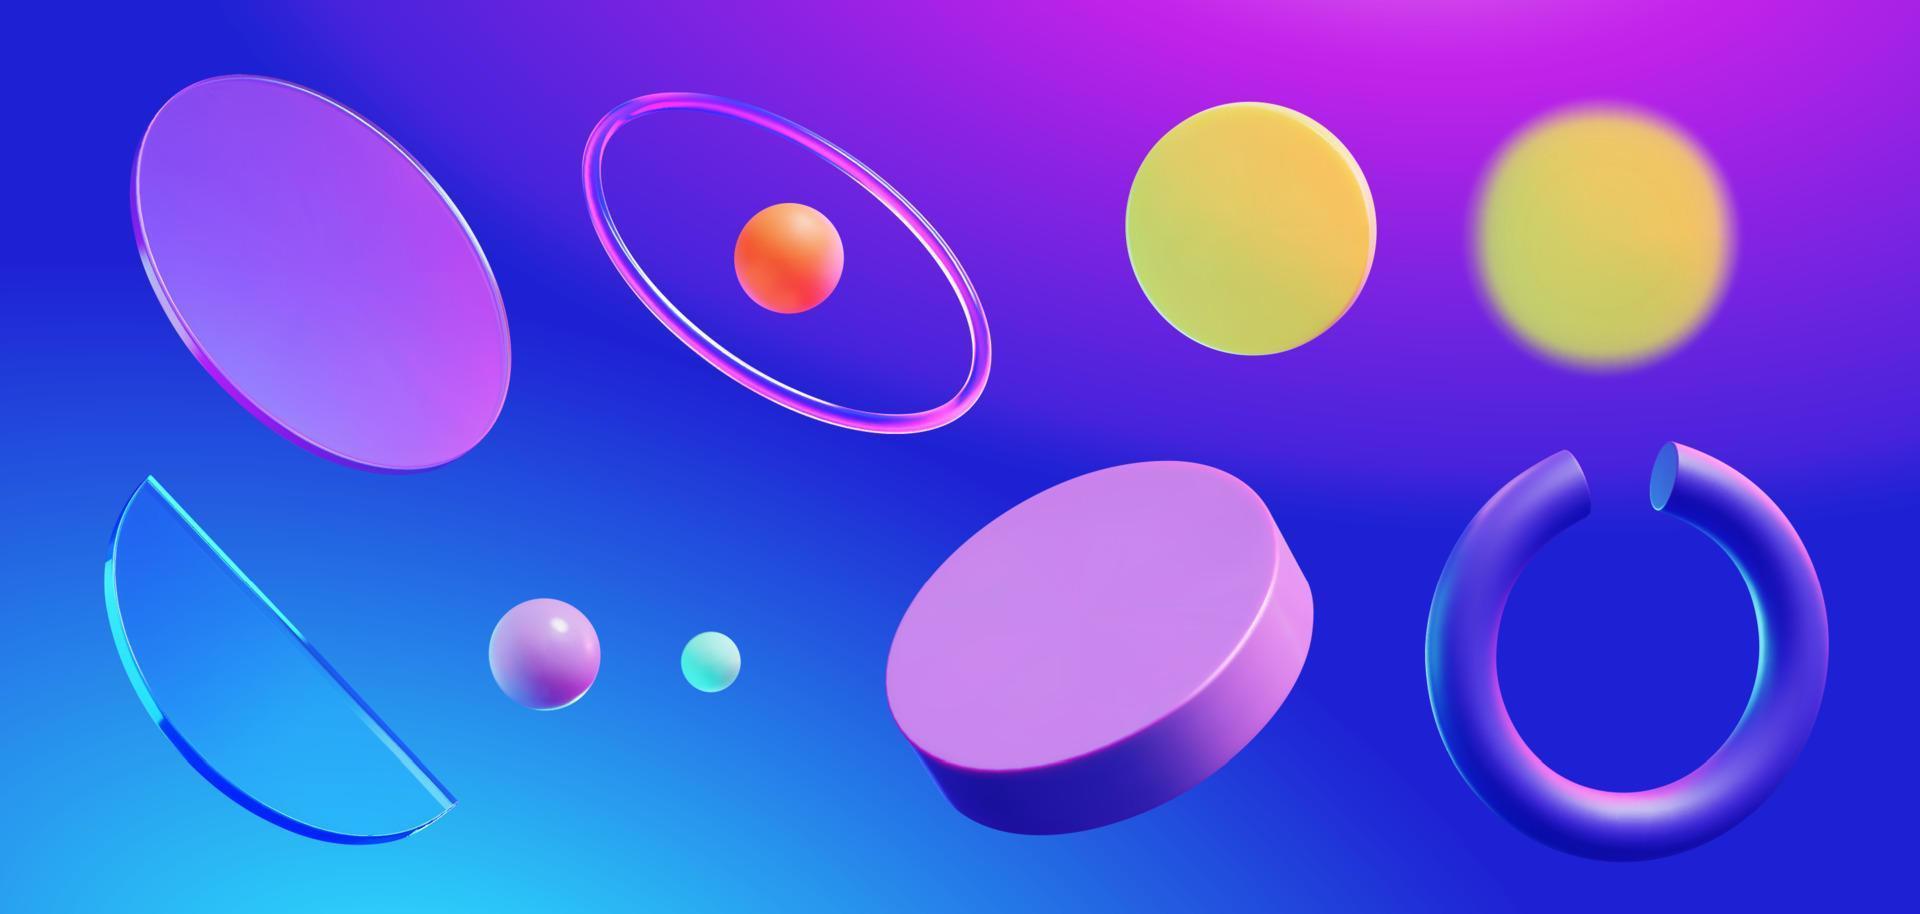 uppsättning av 3d geometrisk element Inklusive runda skivor, bollar, glas, och ringa isolerat på blå bakgrund vektor